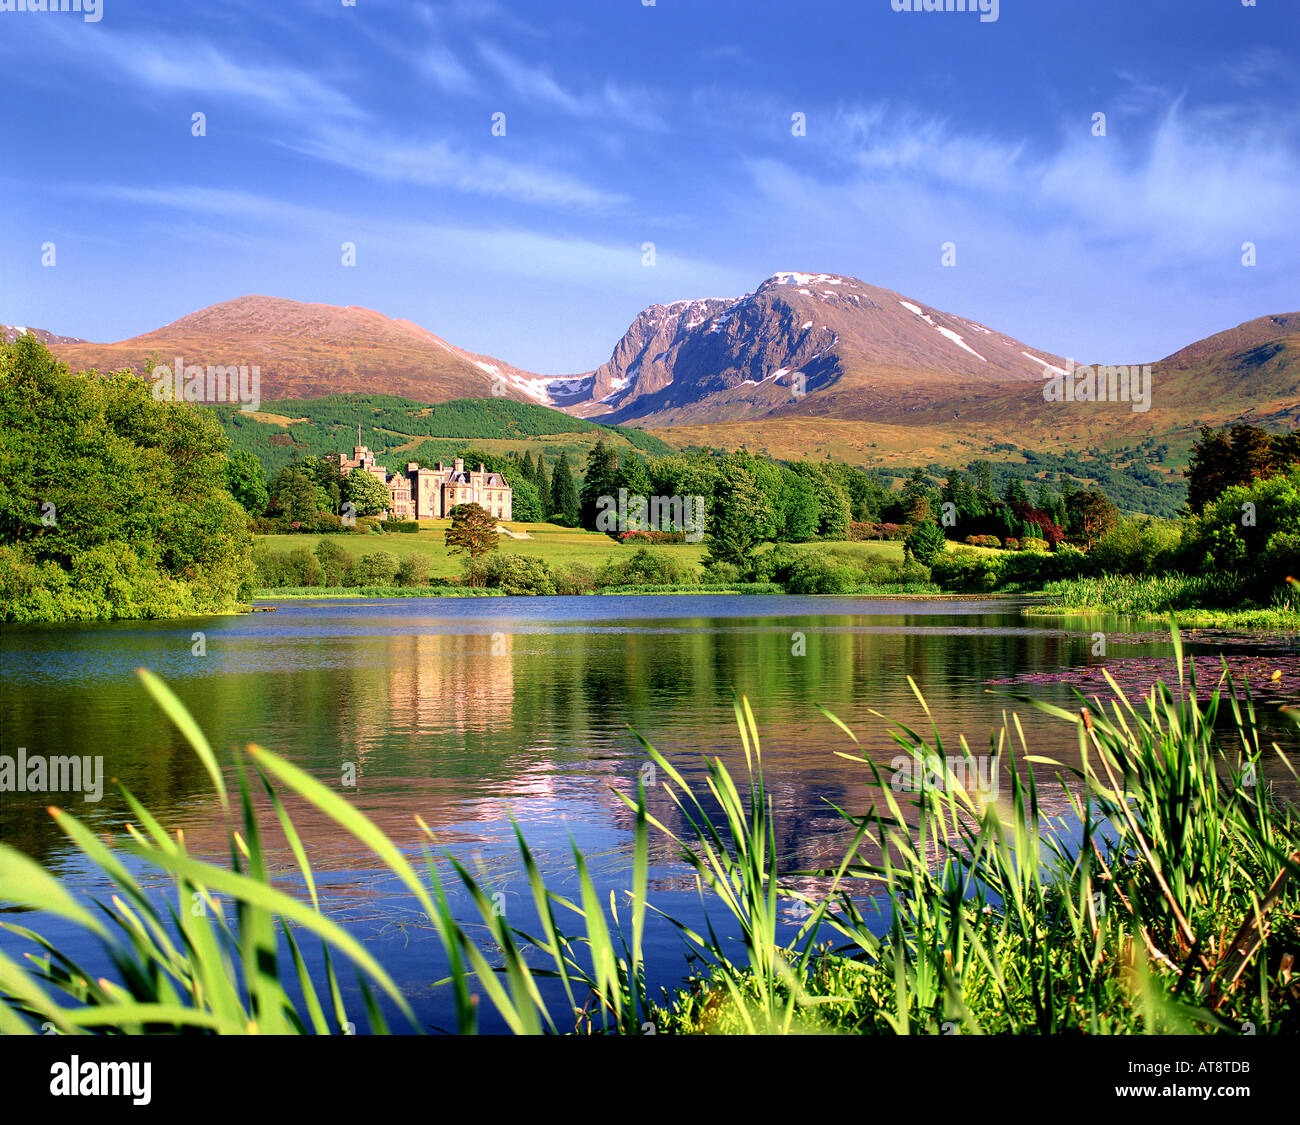 GB - Escocia: Inverlochy Castle & Ben Nevis Foto de stock